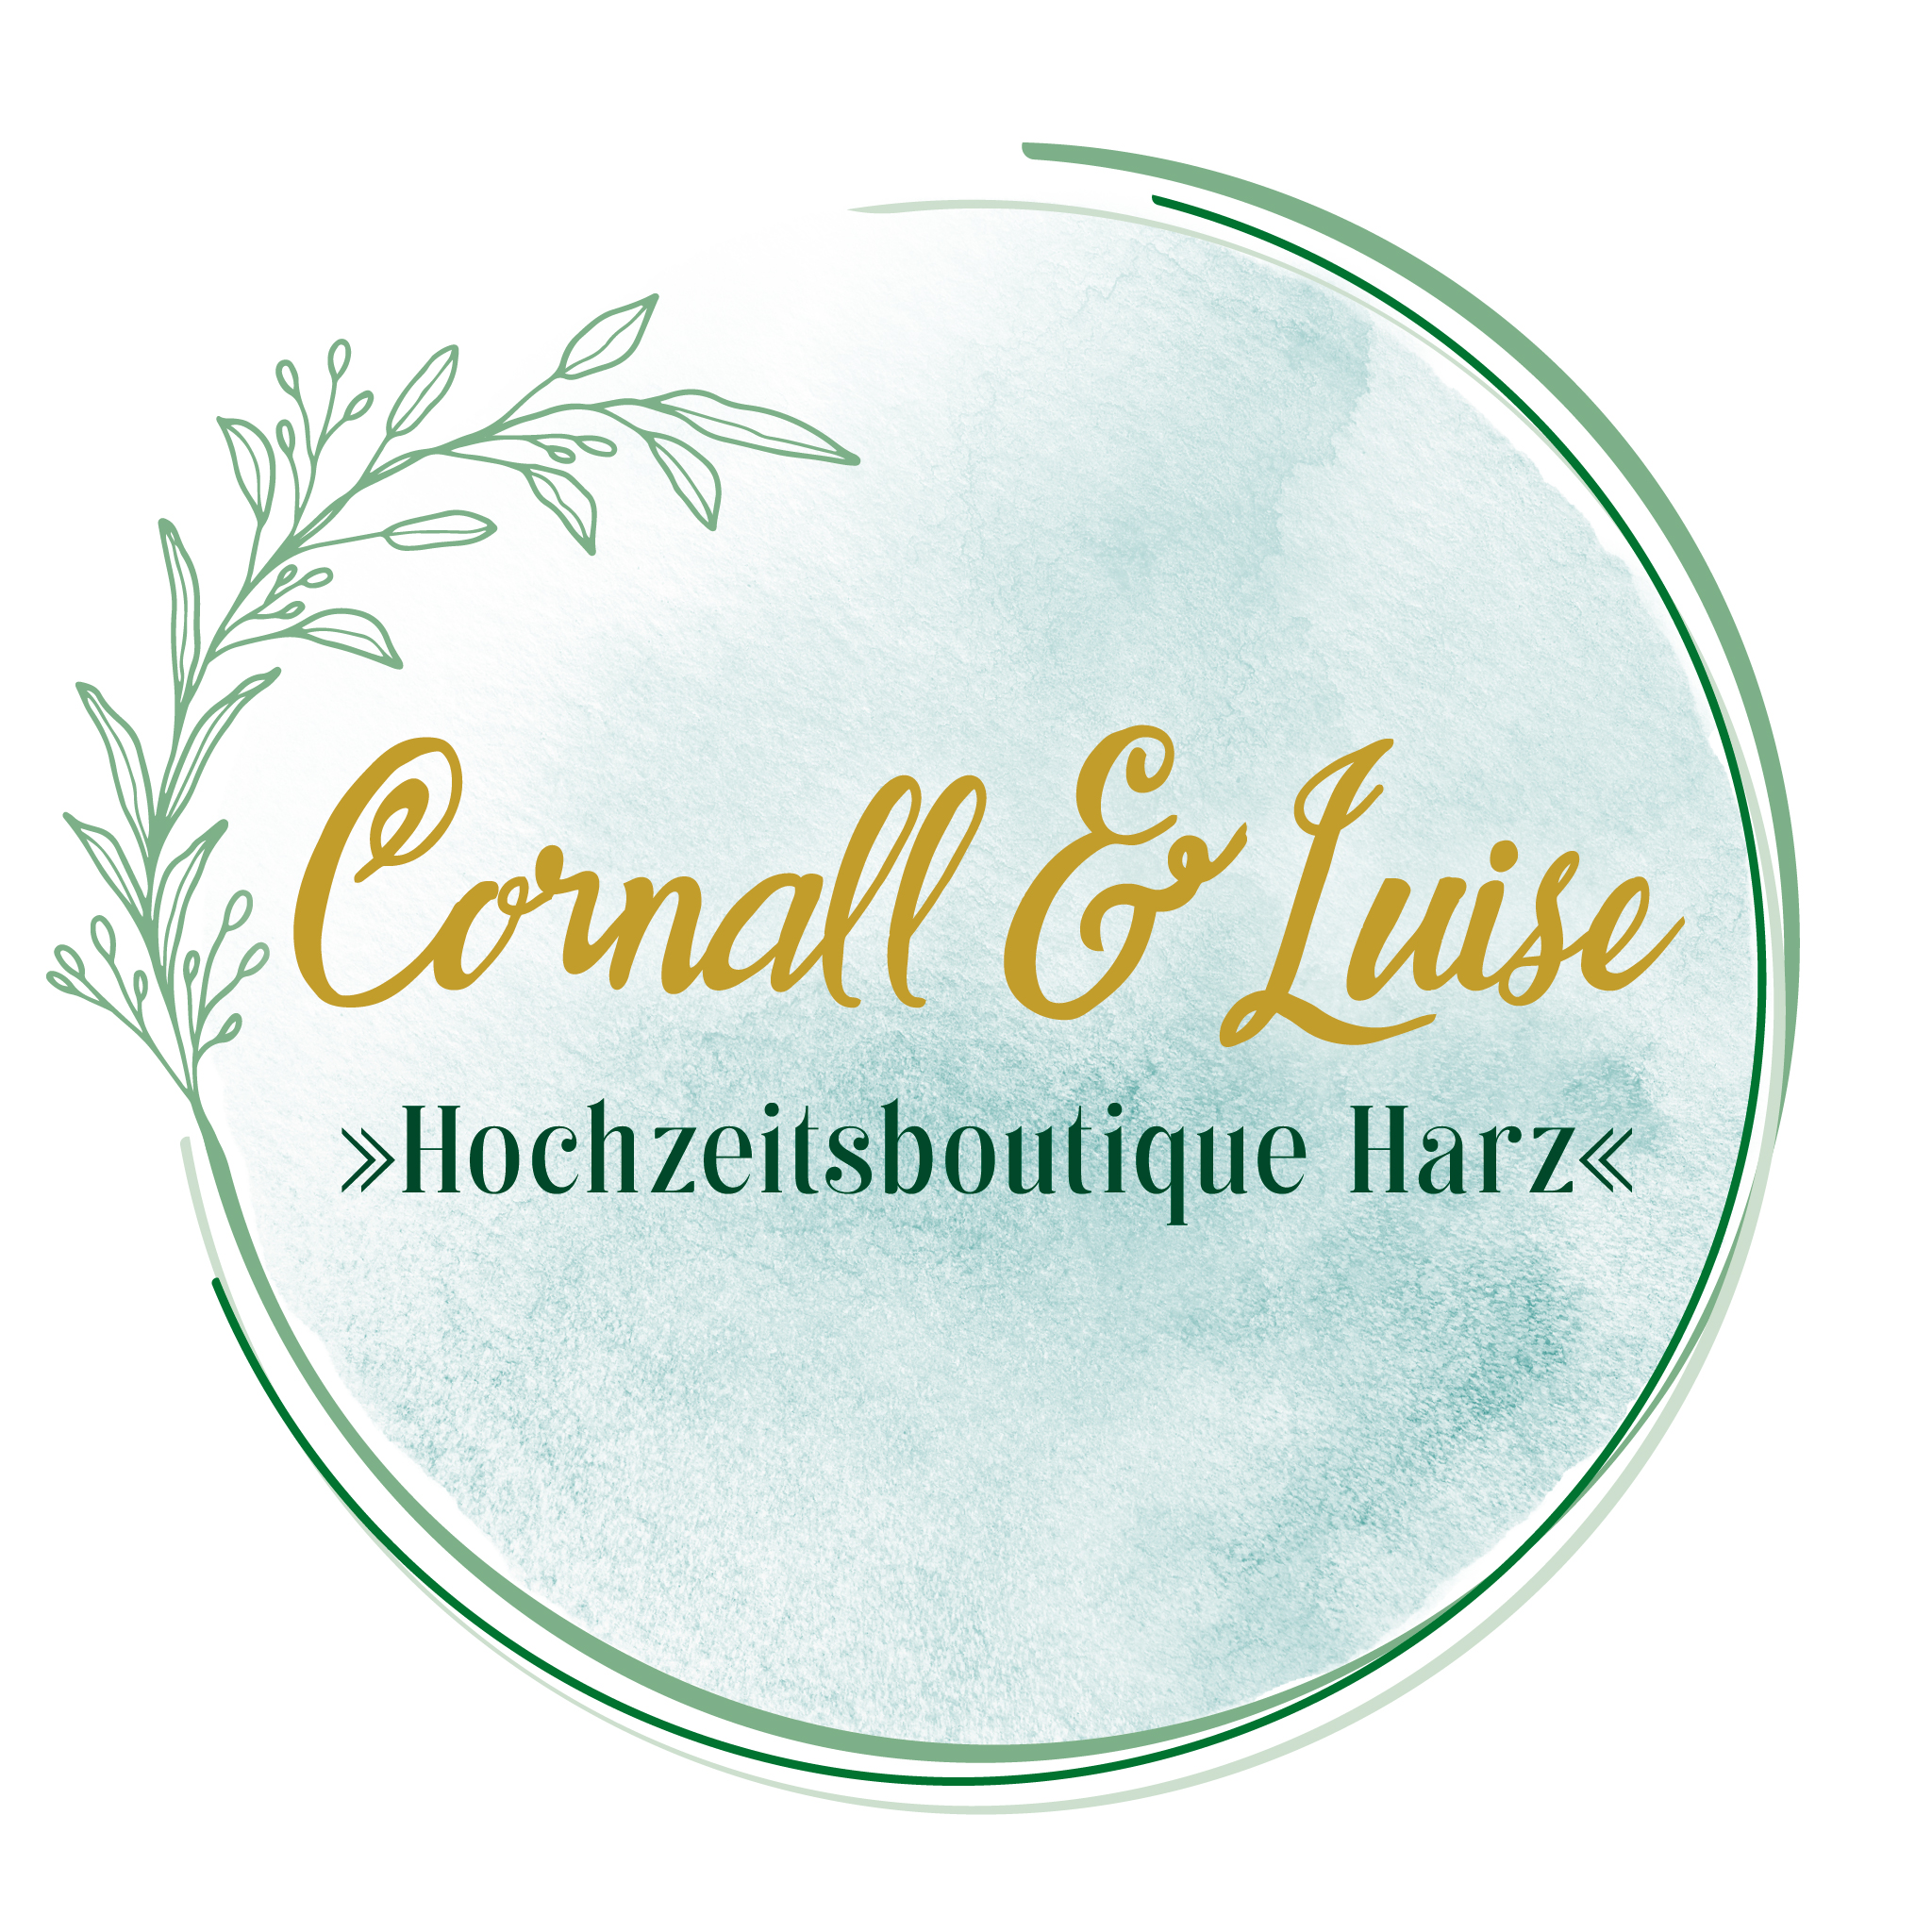 Cornall & Luise  Hochzeitsboutique Harz